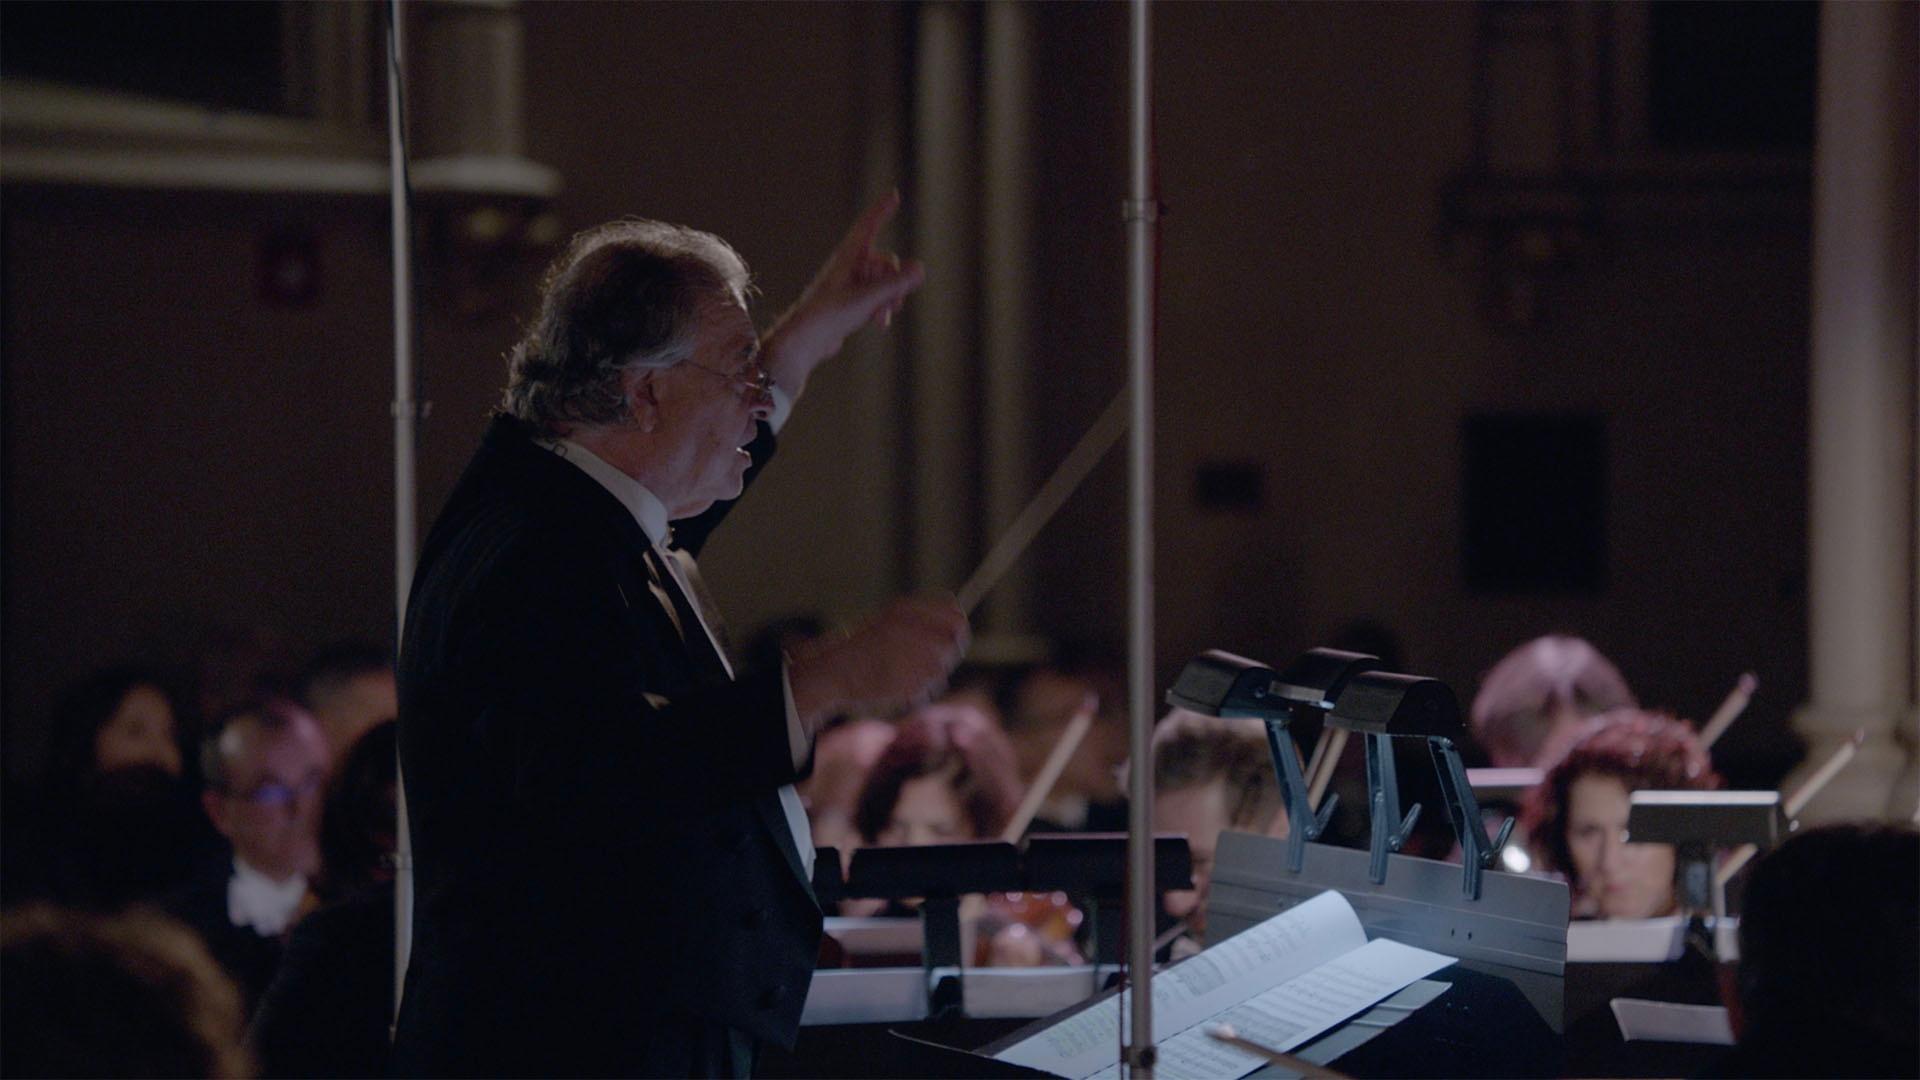 Maestro Donato Renzetti conducts during the Oratorio.